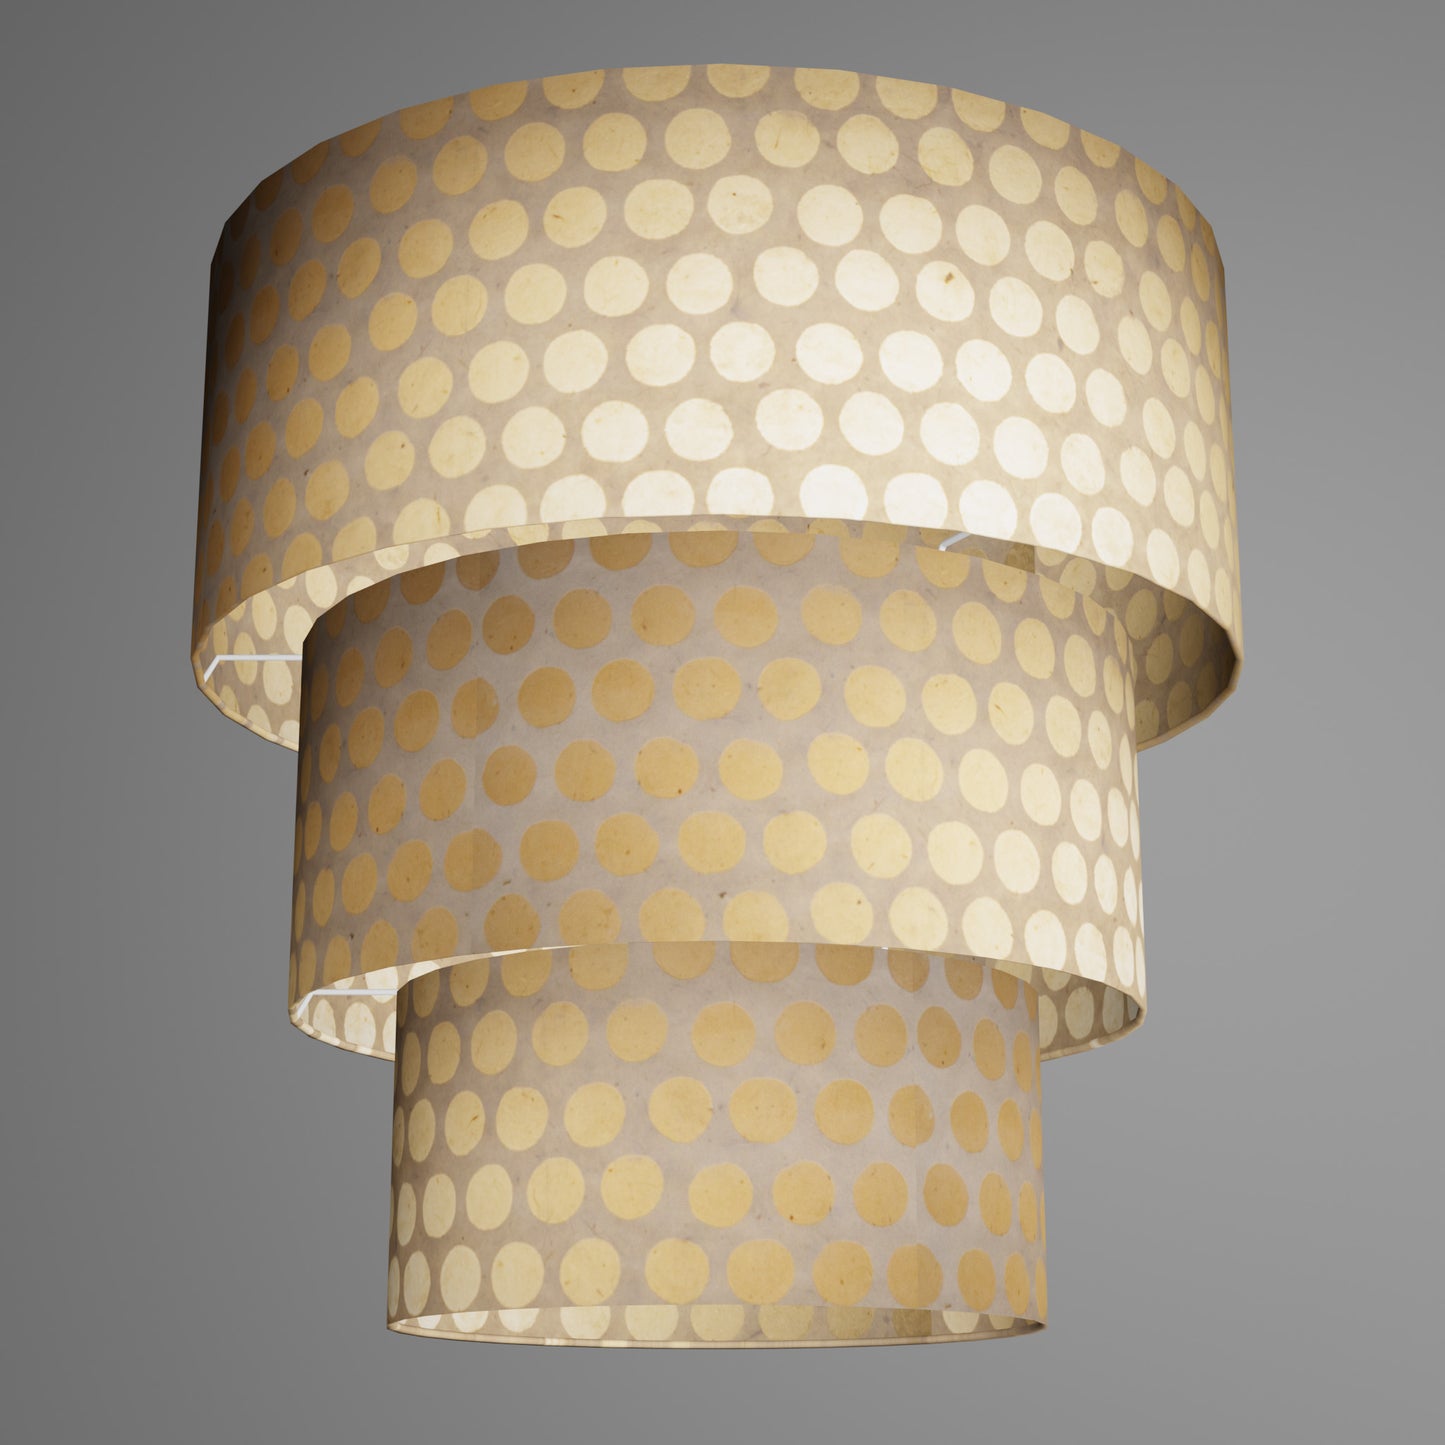 3 Tier Lamp Shade - P85 ~ Batik Dots on Natural, 50cm x 20cm, 40cm x 17.5cm & 30cm x 15cm